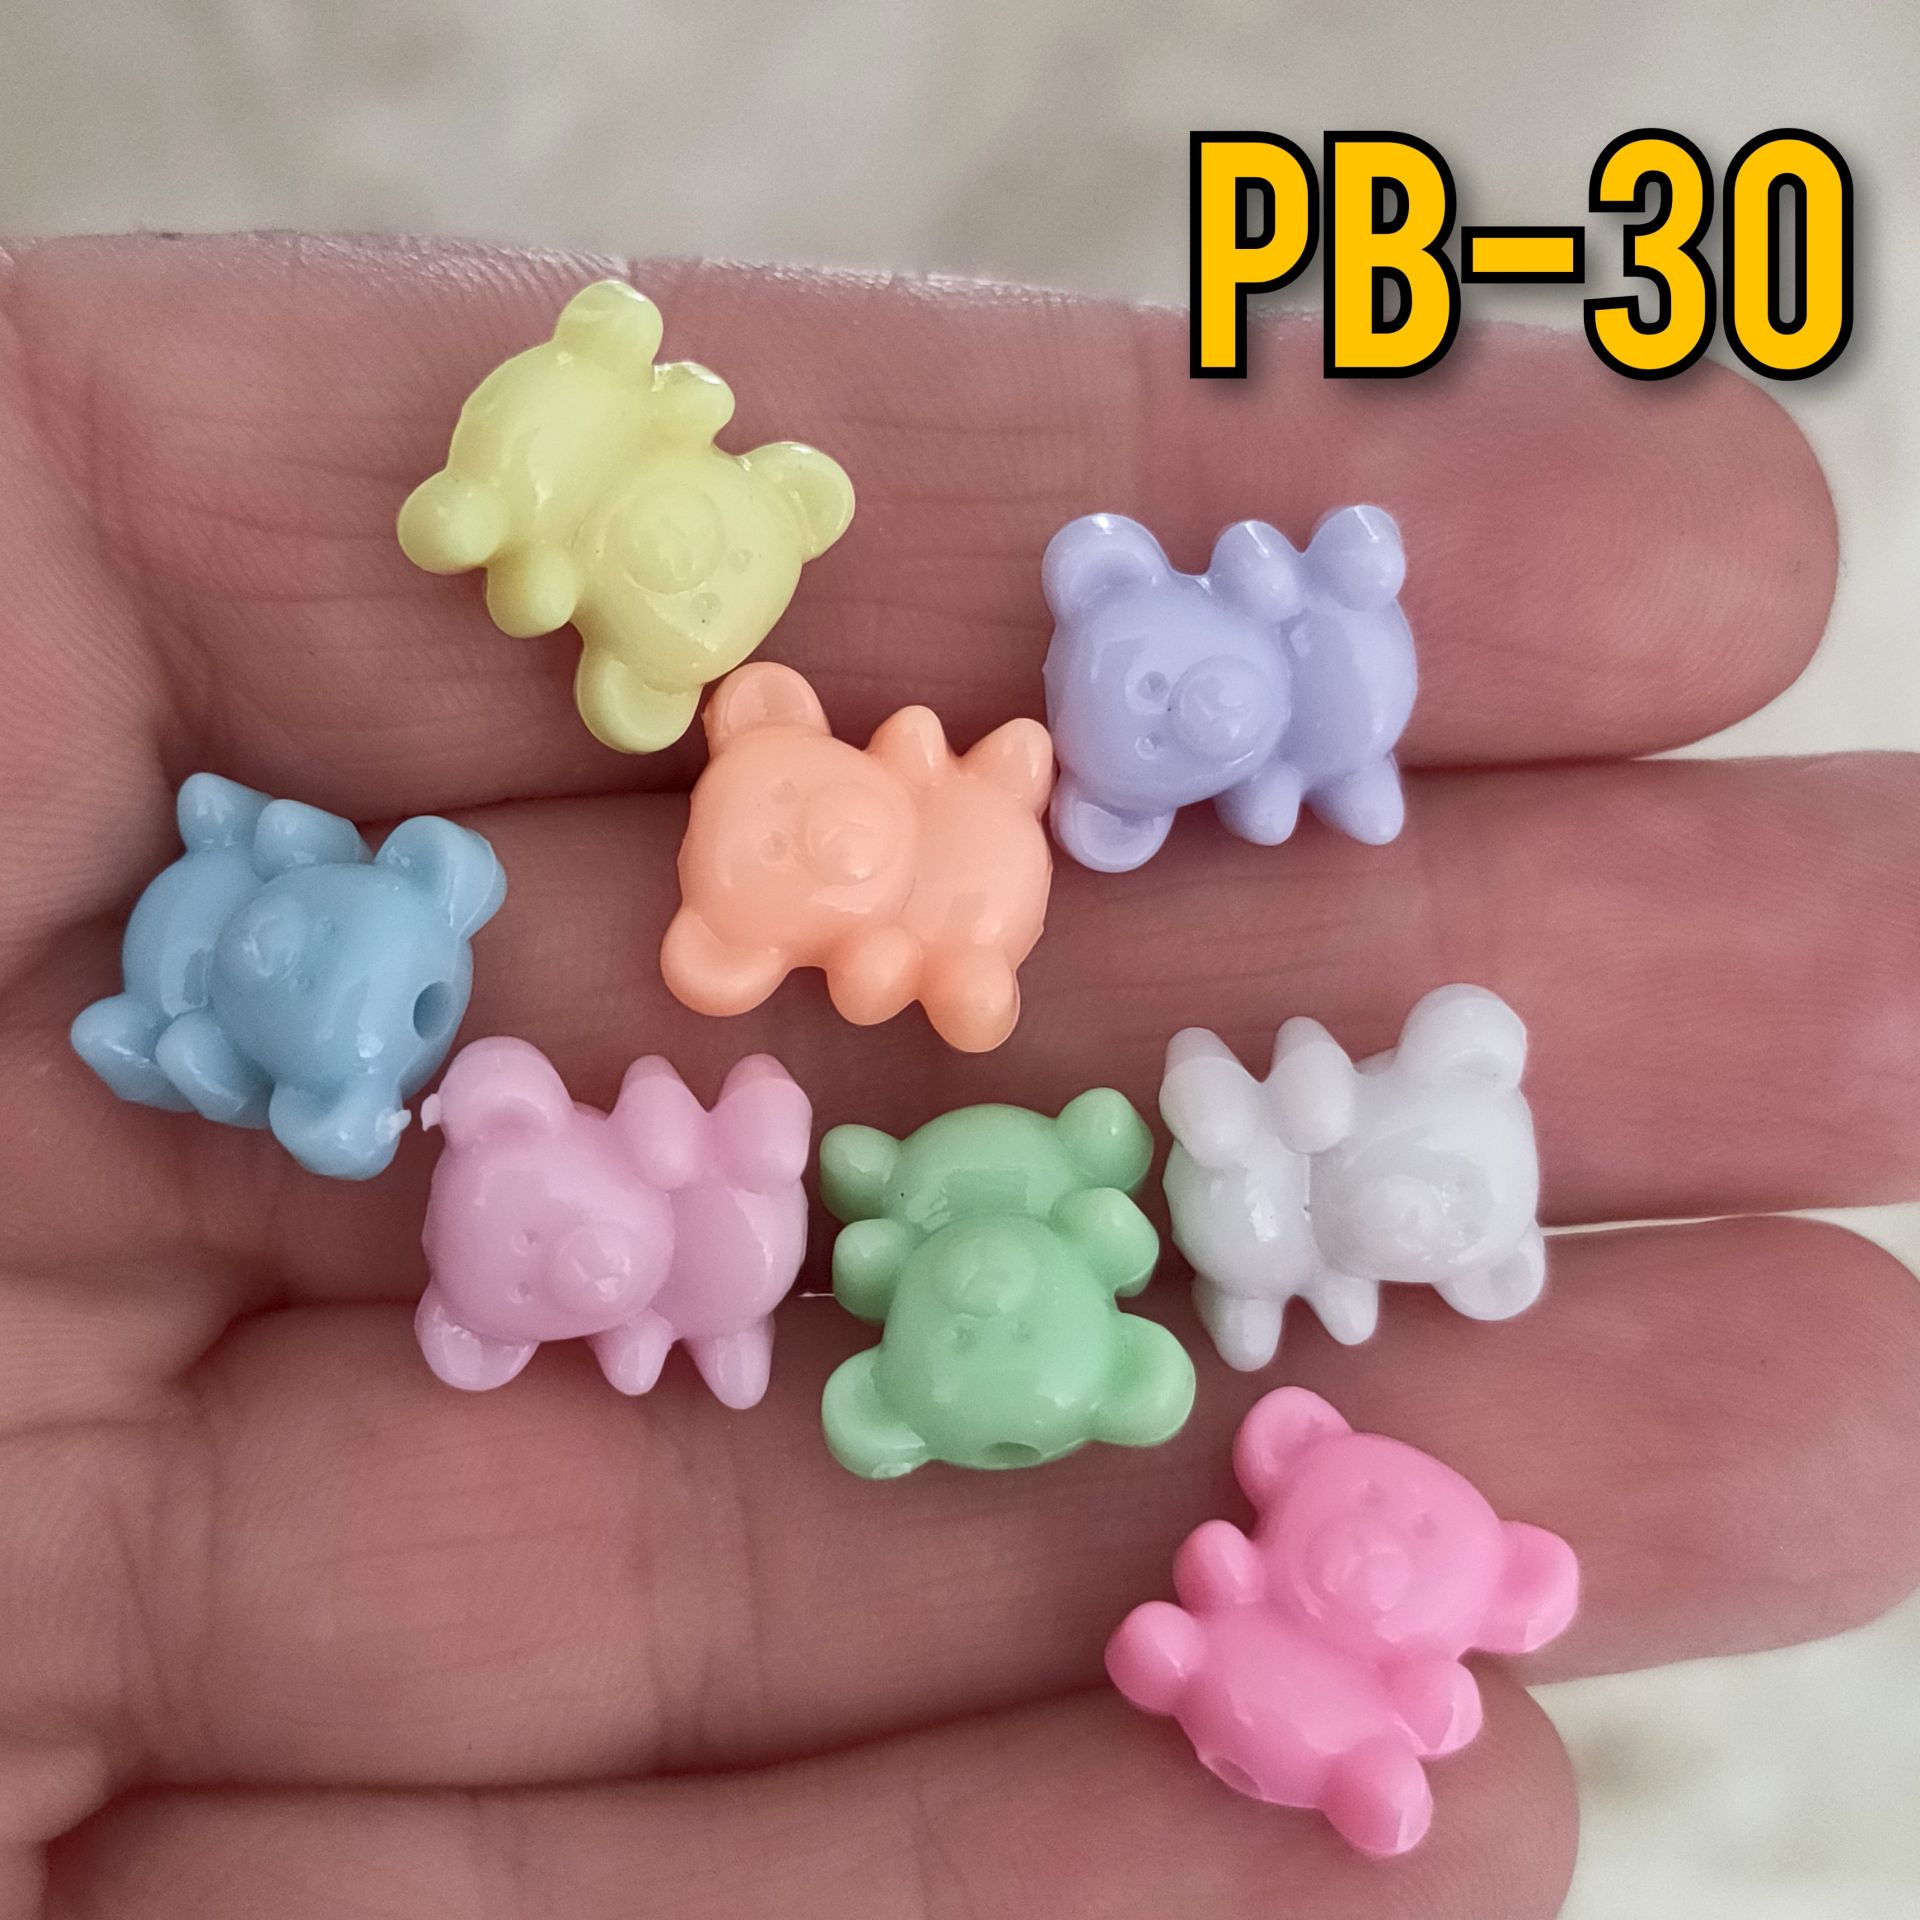 Pb-30 Soft Karışık Renk Plastik Ayıcık